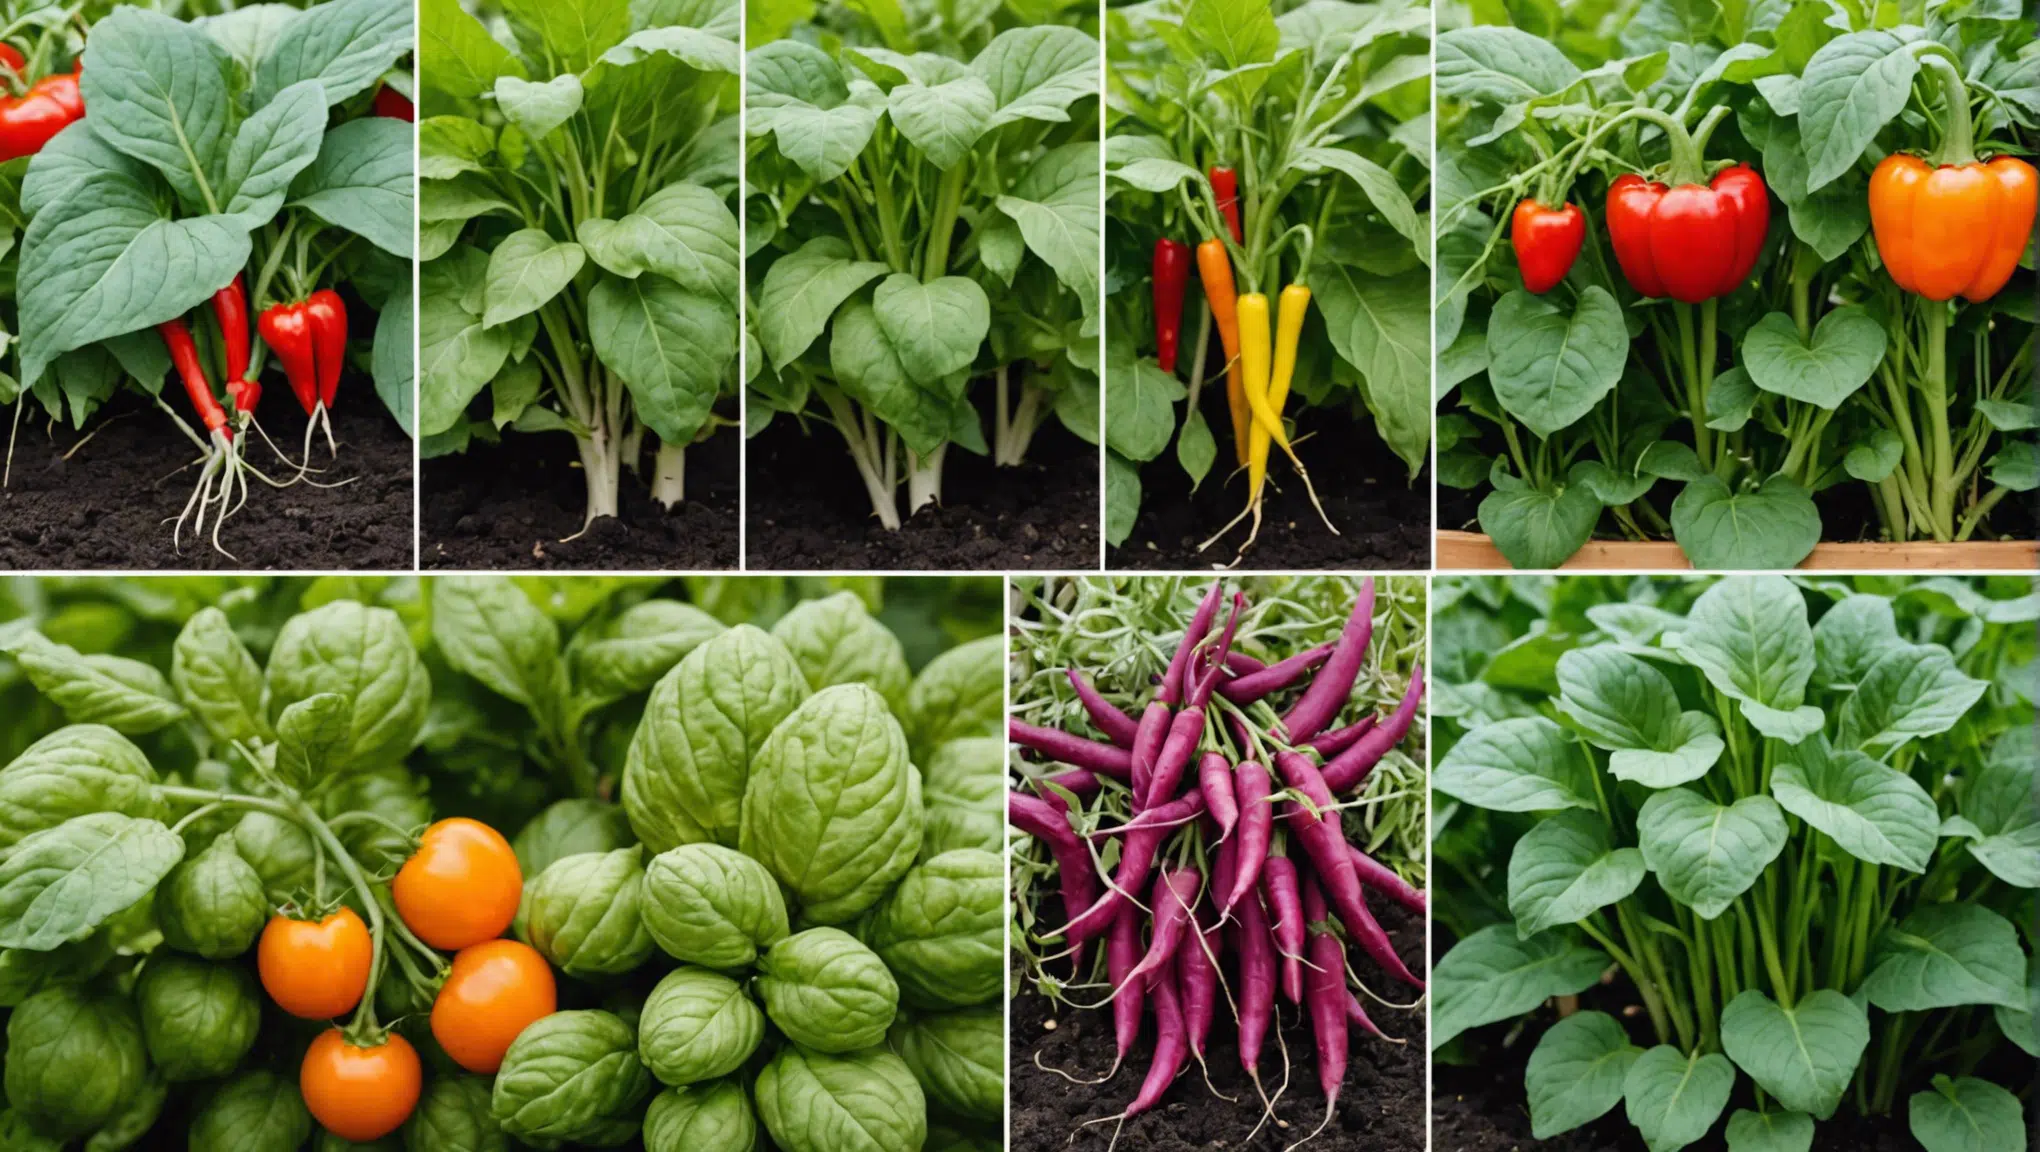 découvrez comment obtenir rapidement une récolte abondante de légumes dans votre potager débutant grâce à nos conseils et astuces pratiques.